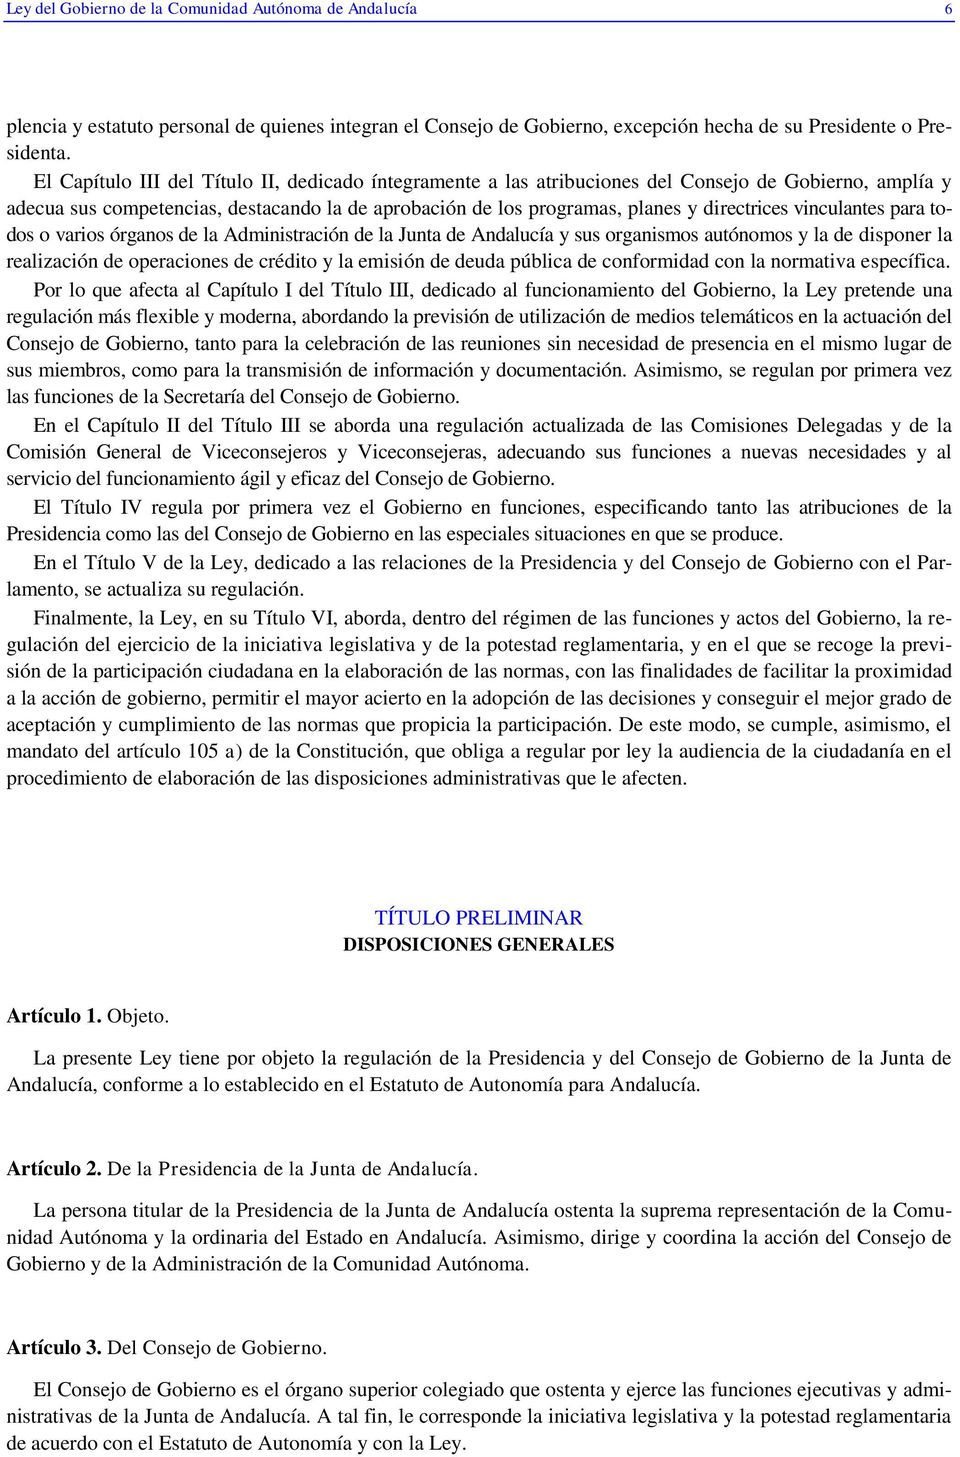 vinculantes para todos o varios órganos de la Administración de la Junta de Andalucía y sus organismos autónomos y la de disponer la realización de operaciones de crédito y la emisión de deuda